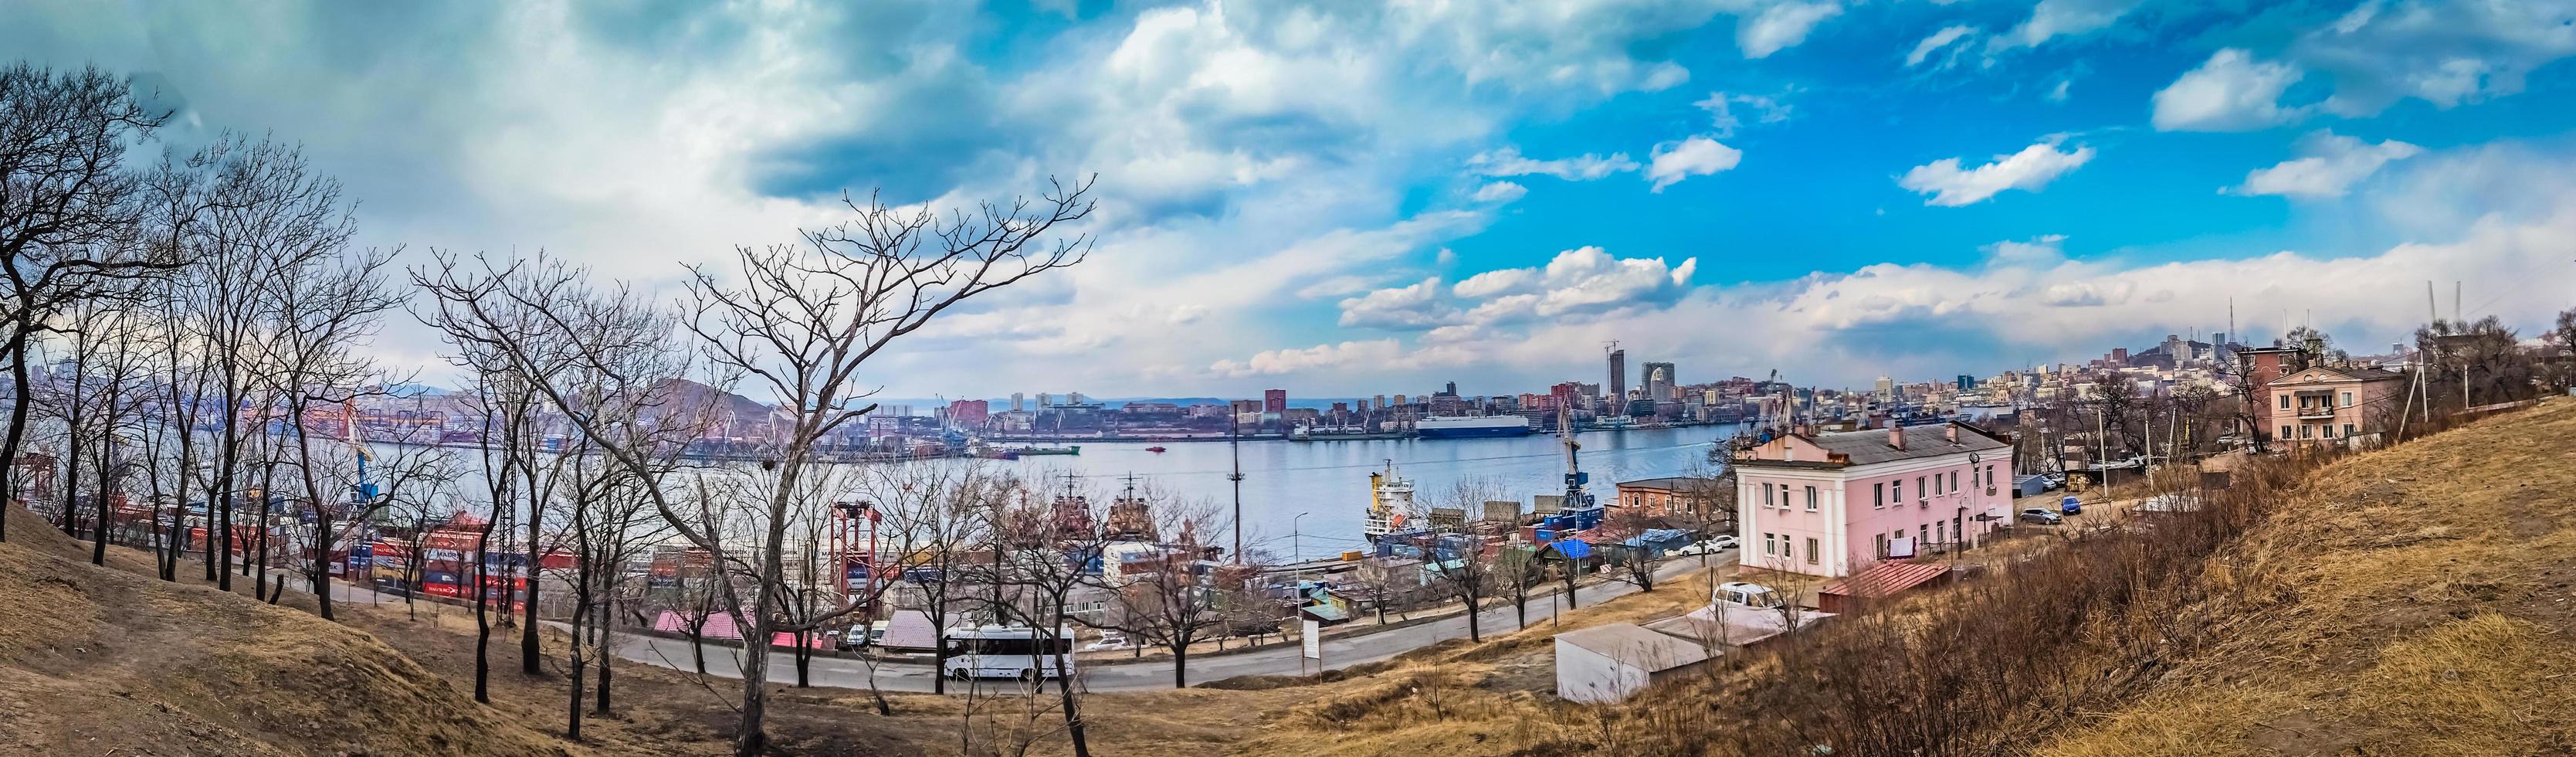 vladivostok, primorsky krai - 6 april 2018-panorama van het stadsbeeld met uitzicht op de baai. foto